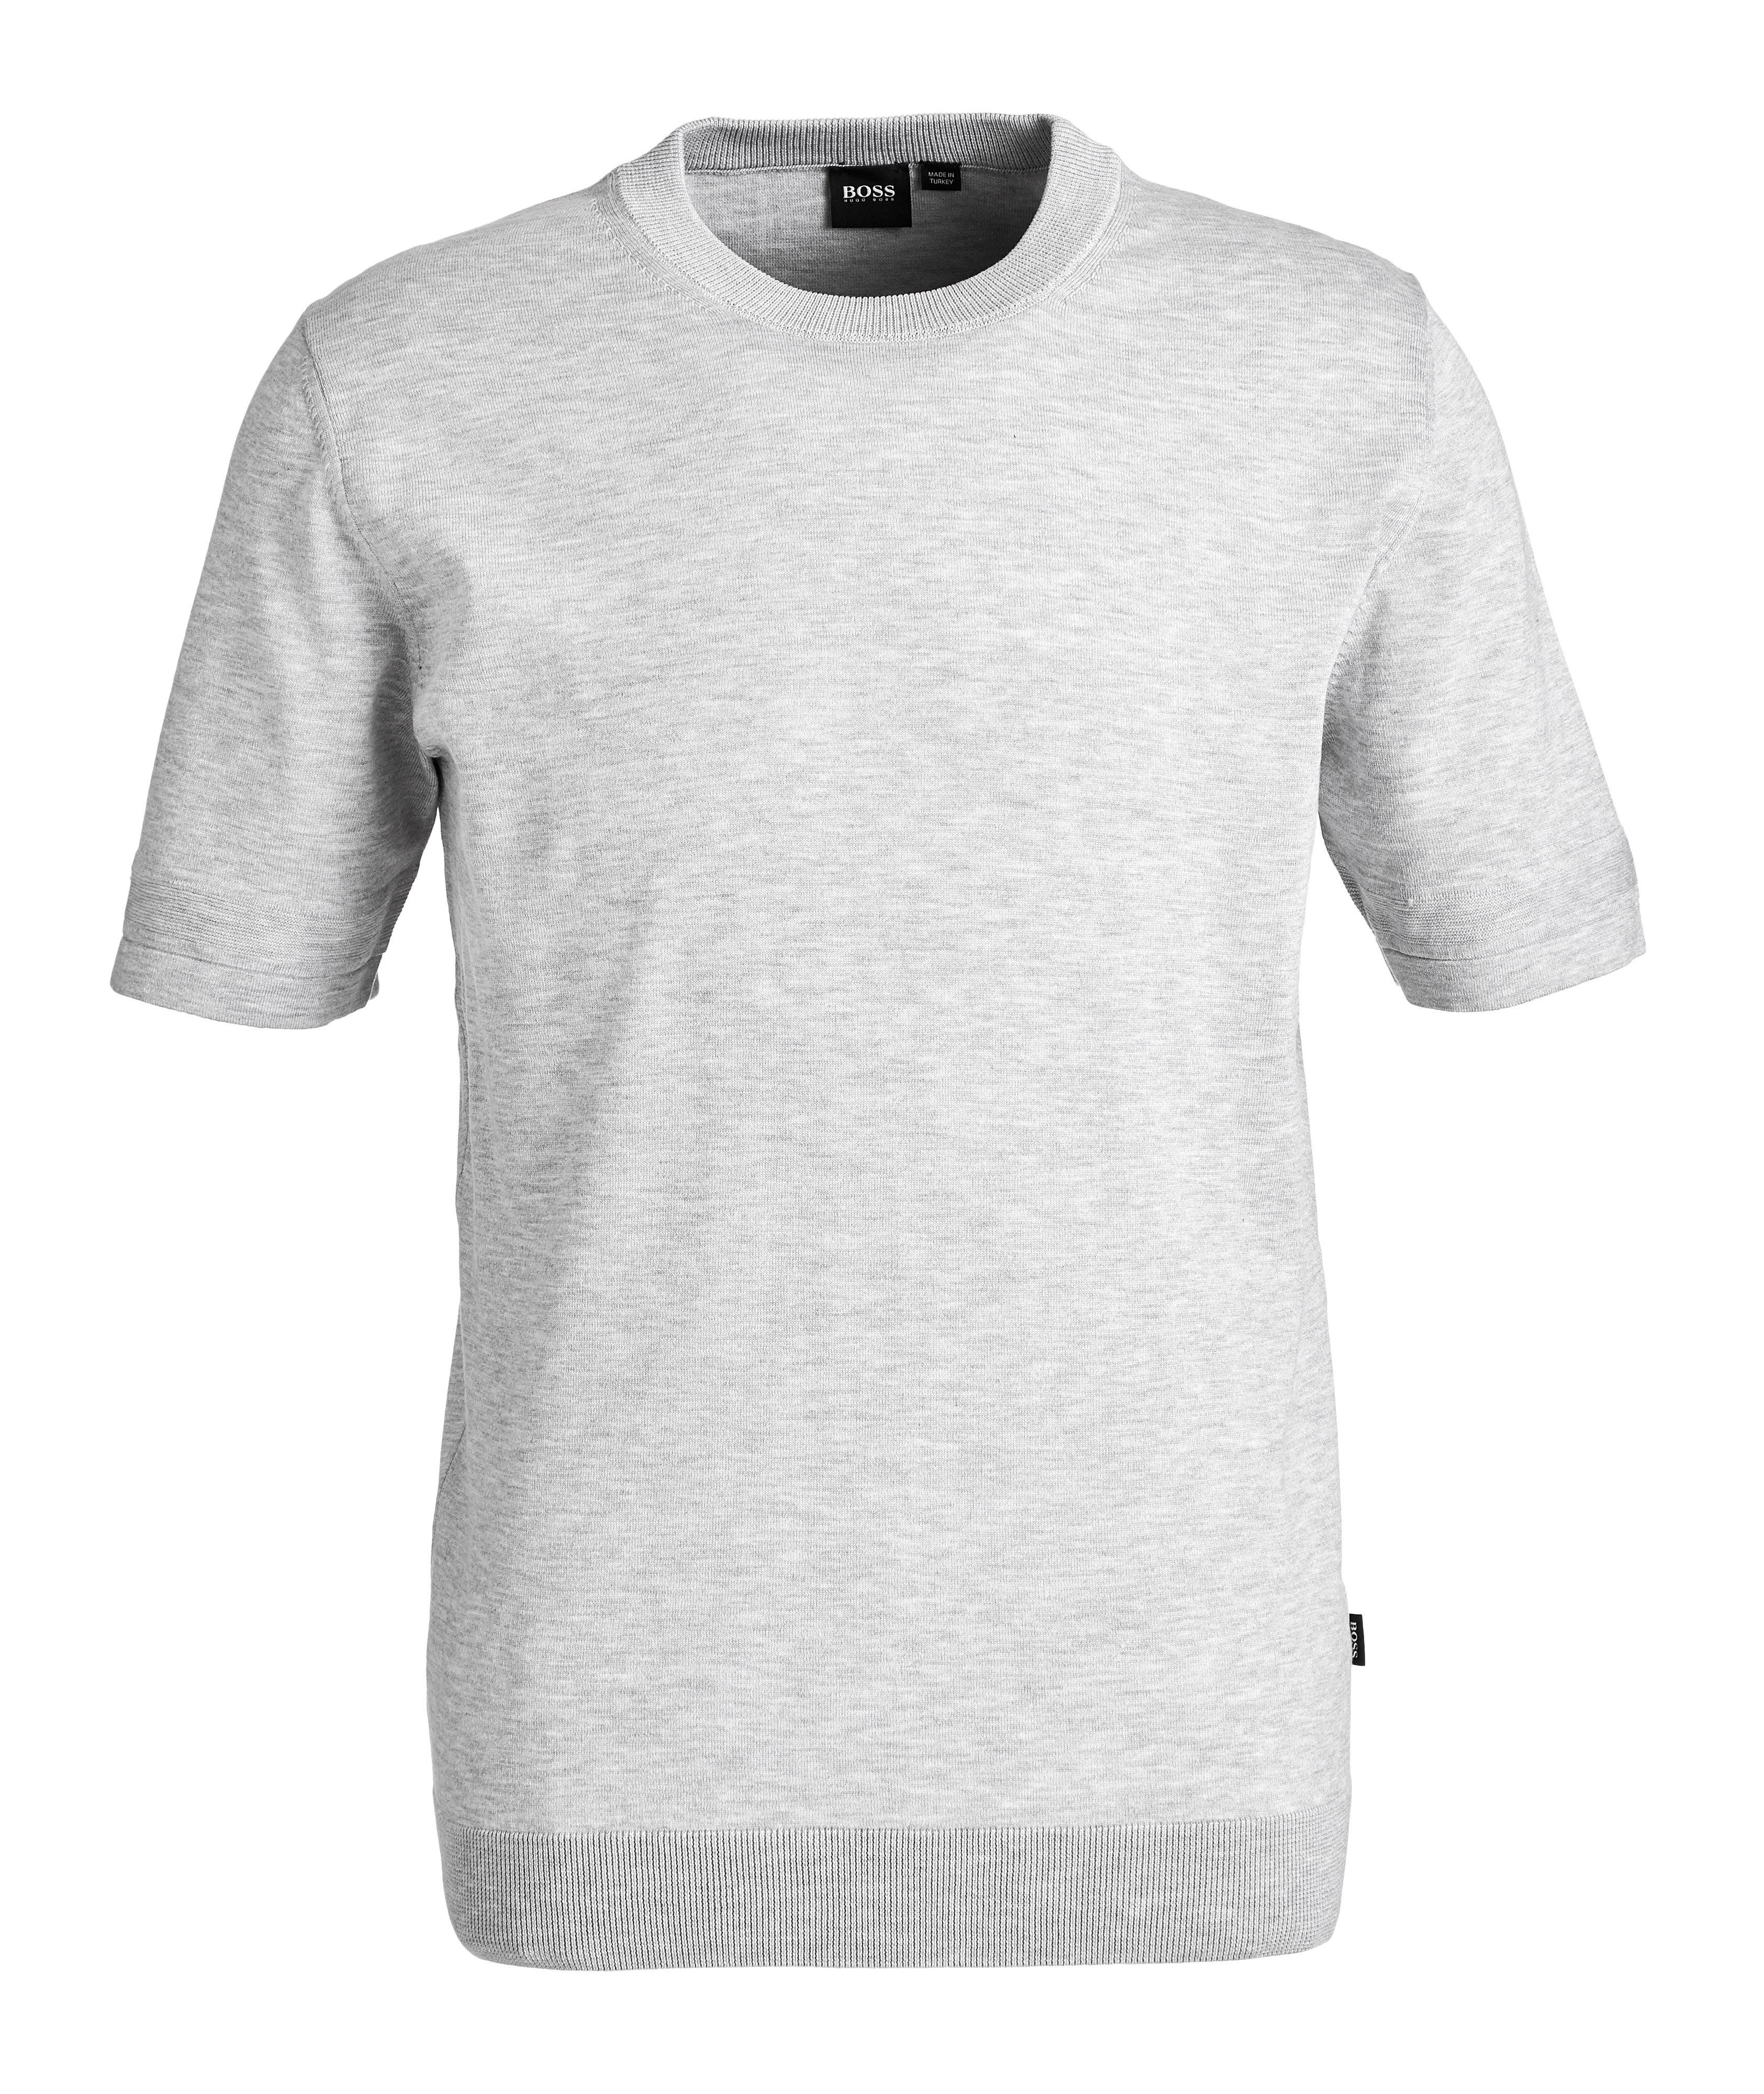 T-shirt en tricot de coton image 0